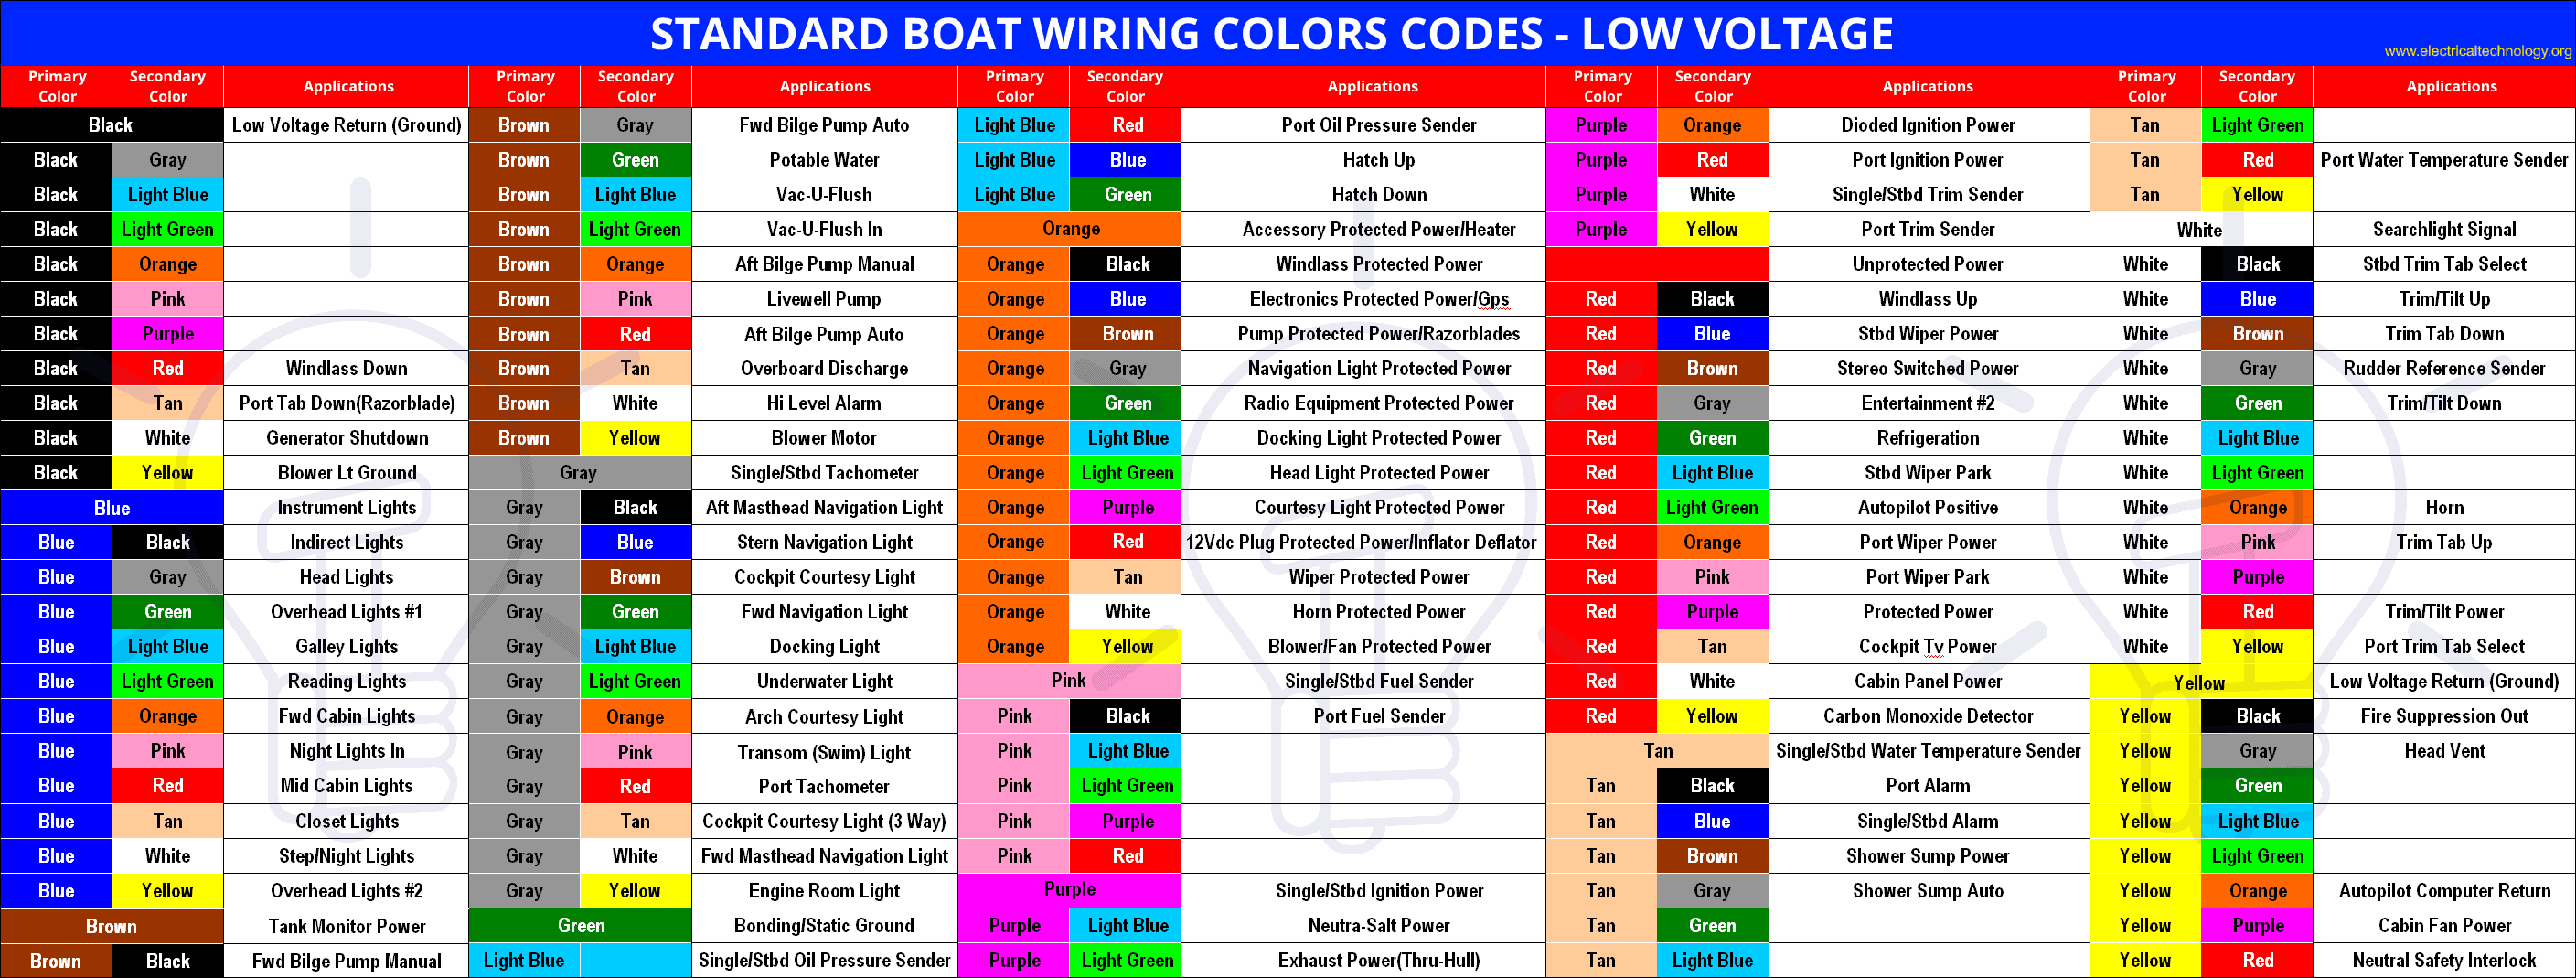 Código de colores estándar para cableado de embarcaciones: bajo voltaje